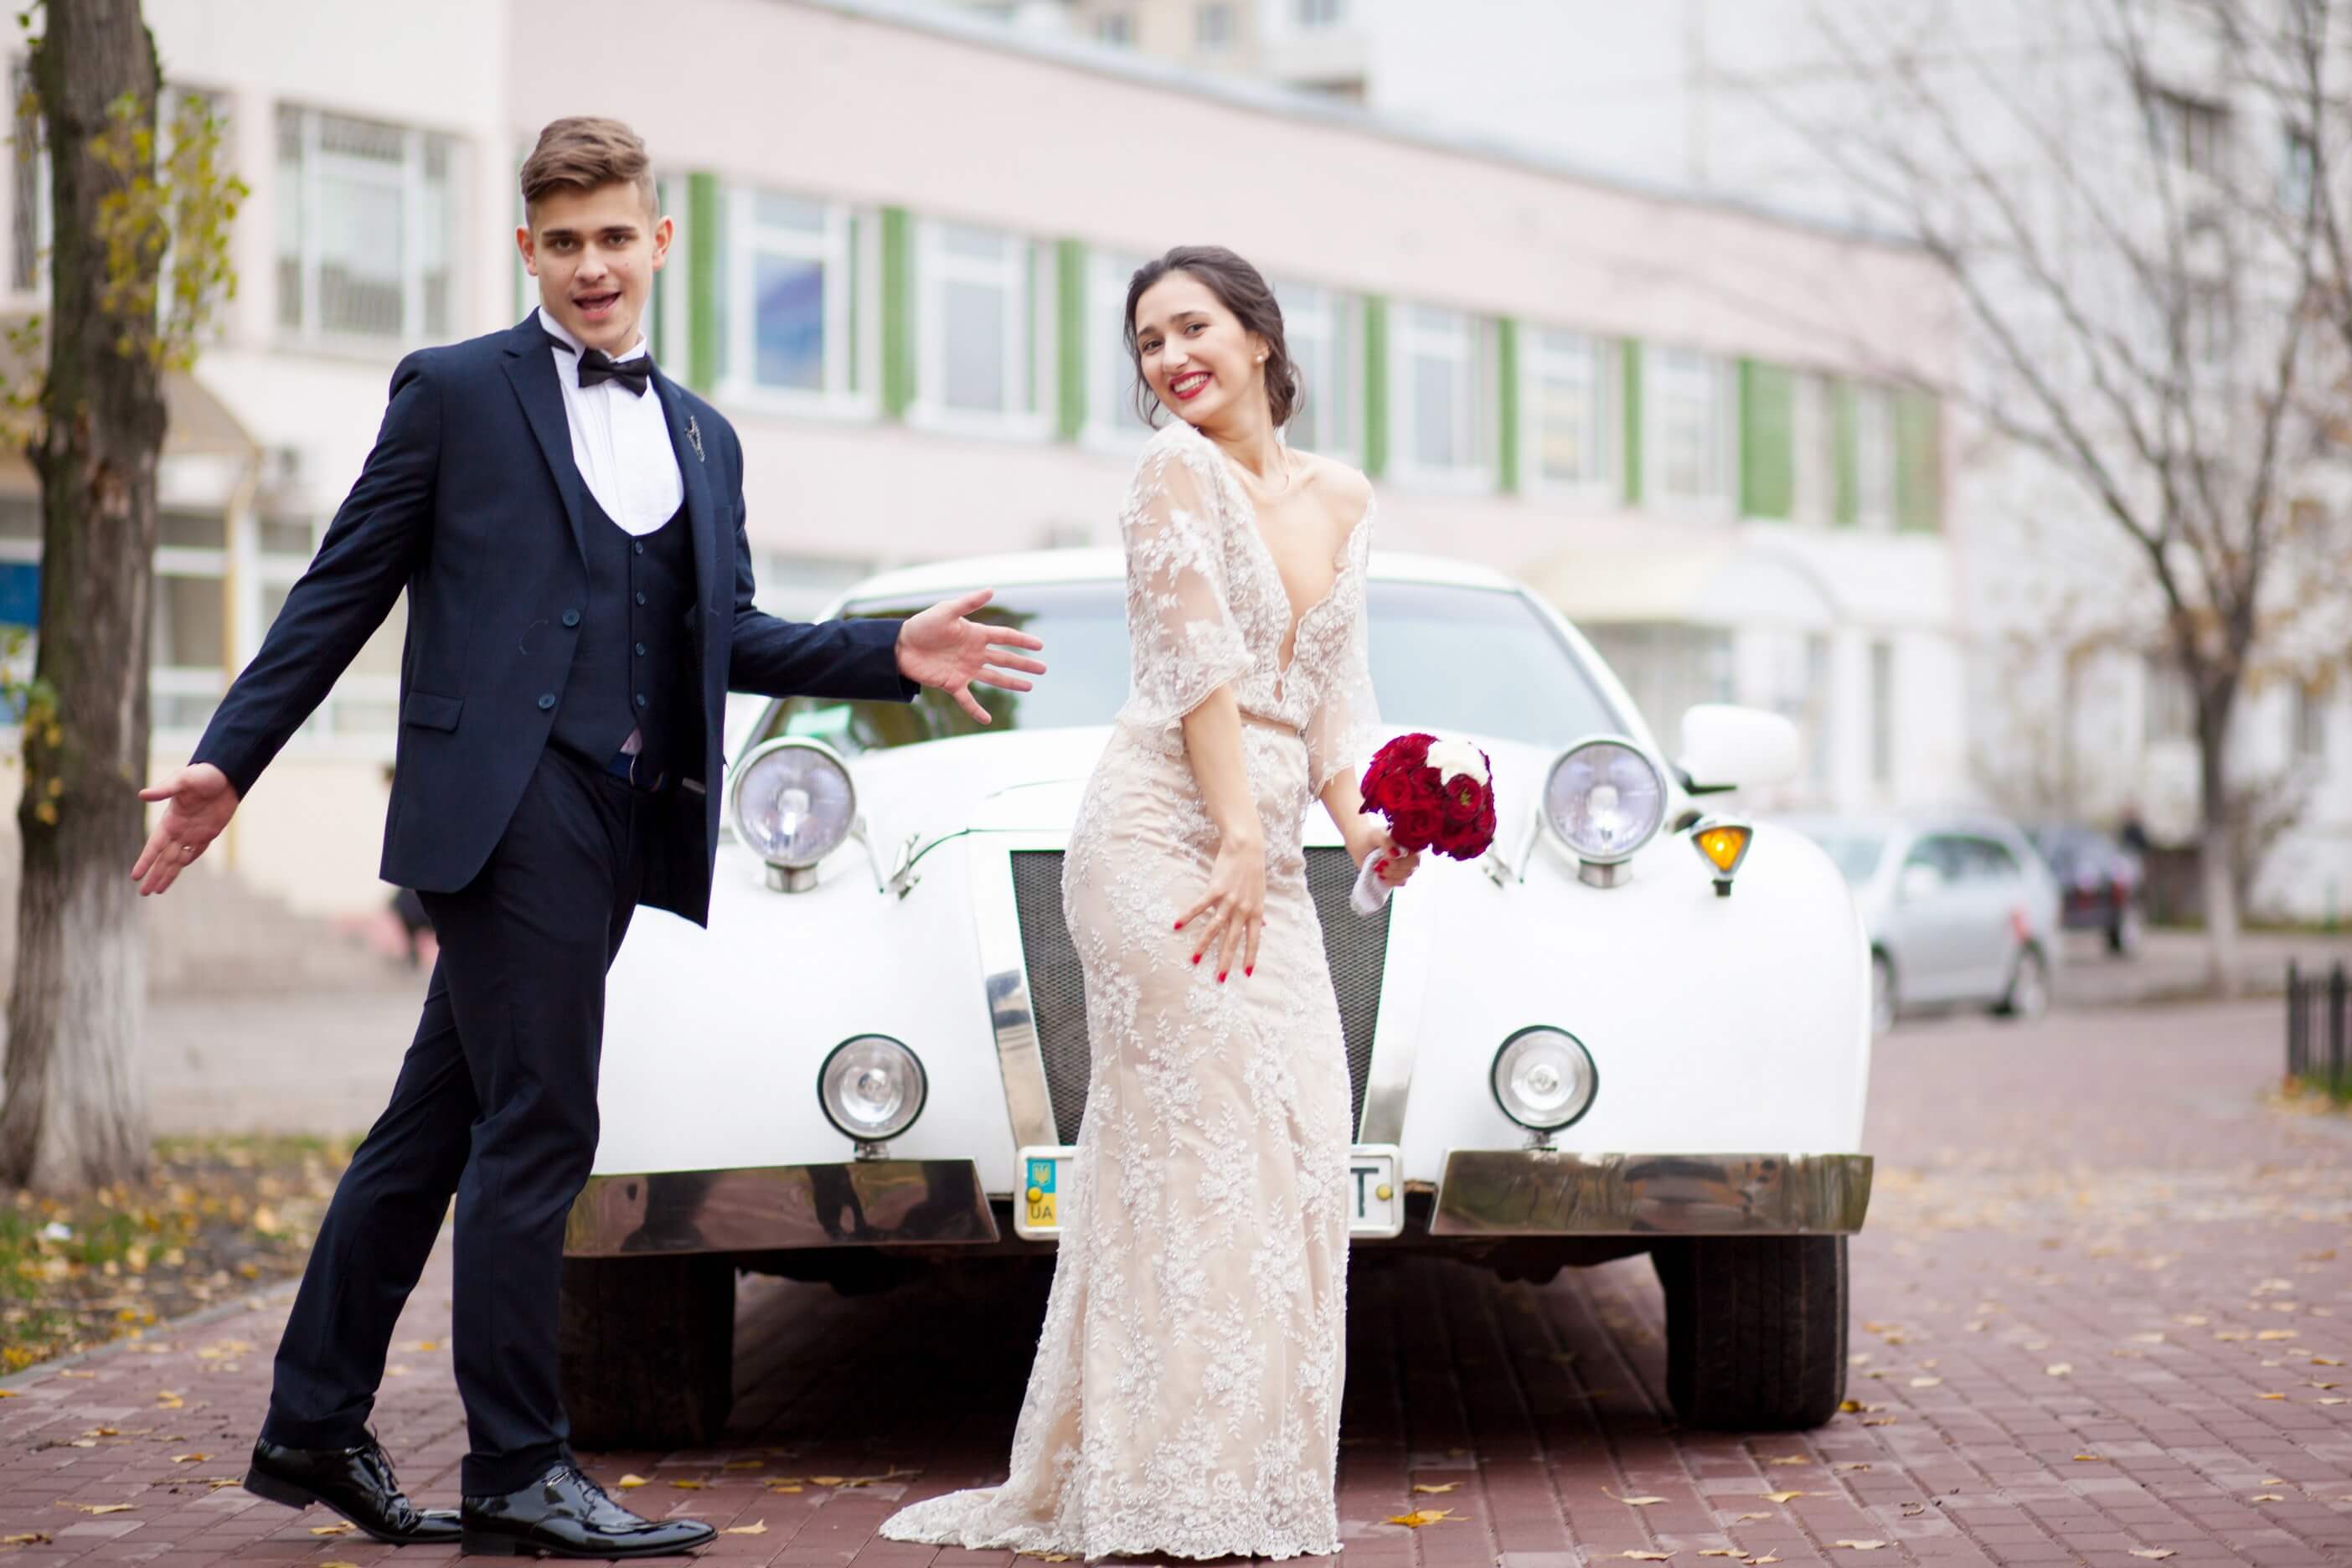 Стиль свадьбы: какие бывают стили, как оформить свадьбу в стиле